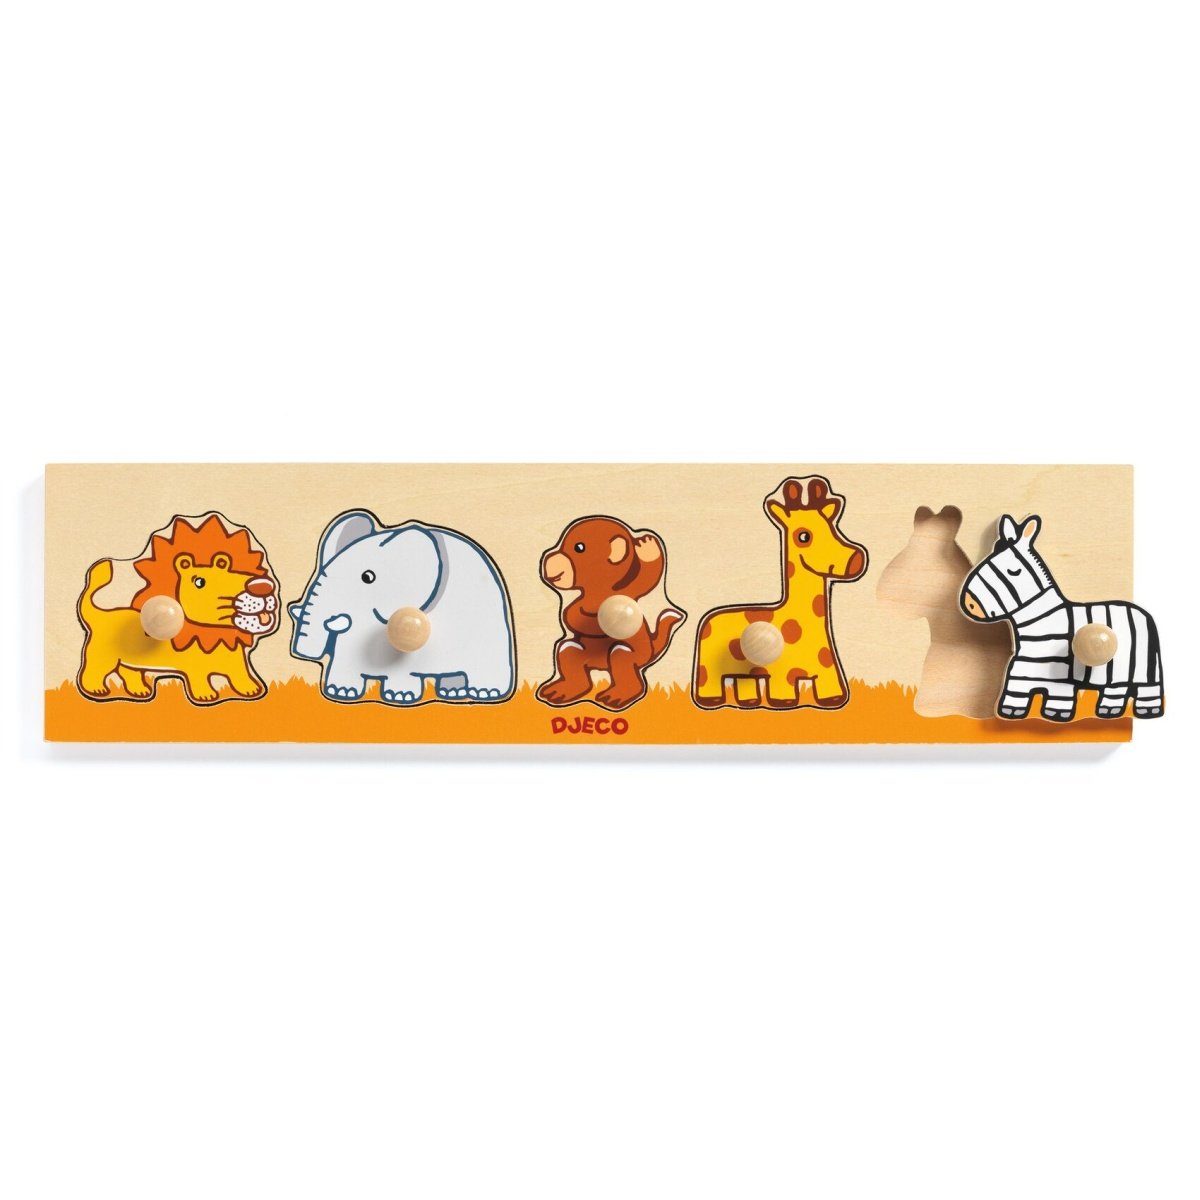 DJECO Steckpuzzle Greifpuzzle aus Holz mit 5 Tieren, Puzzleteile